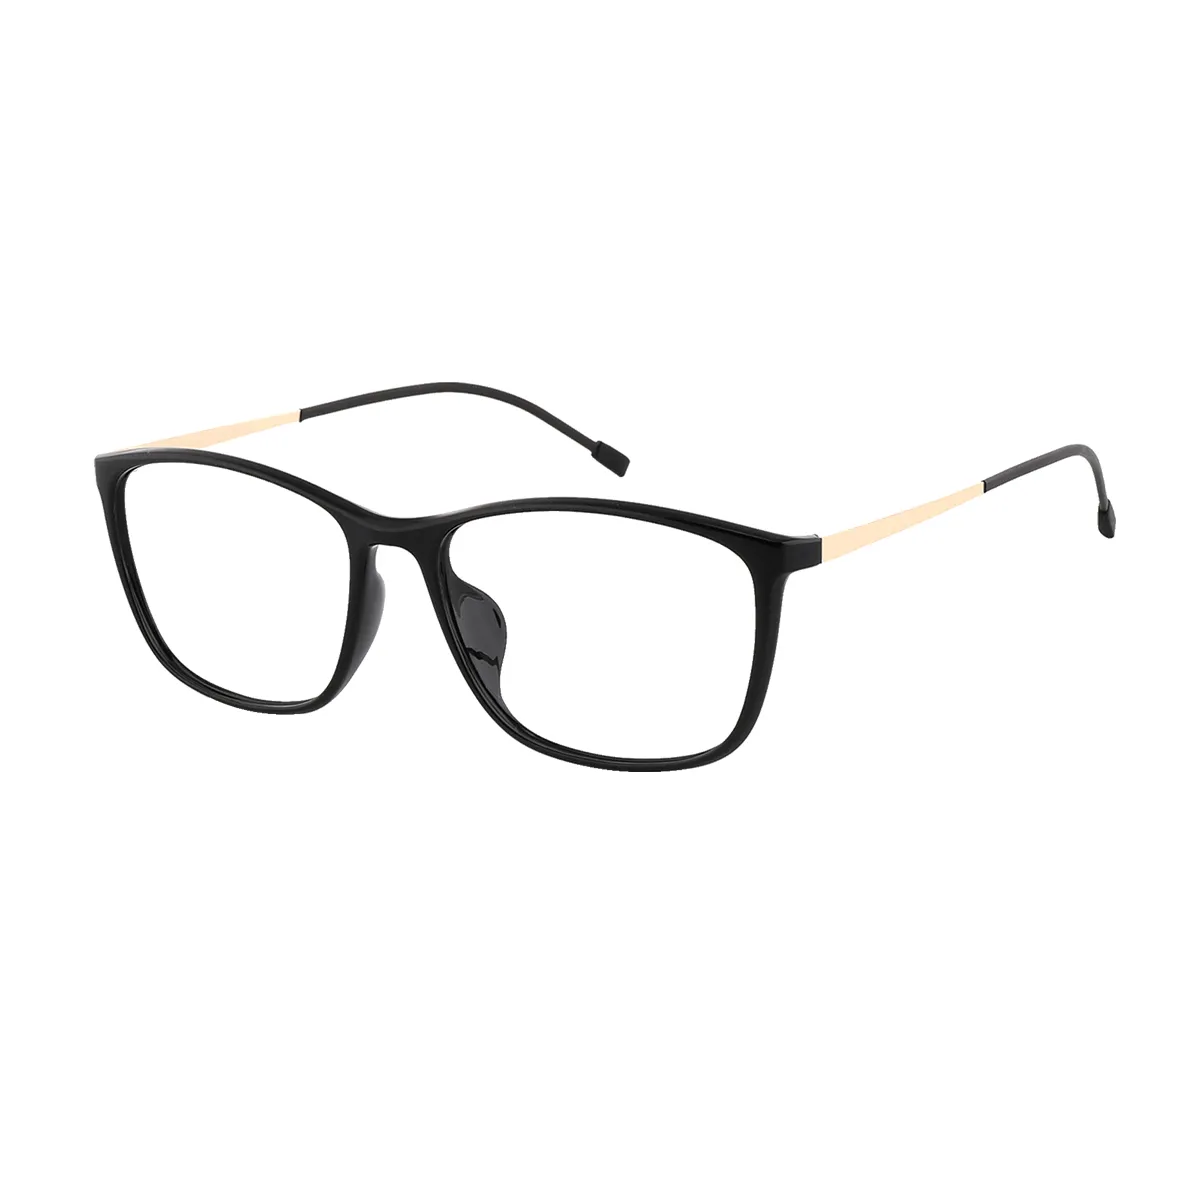 Elton - Rectangle Black Glasses for Men & Women